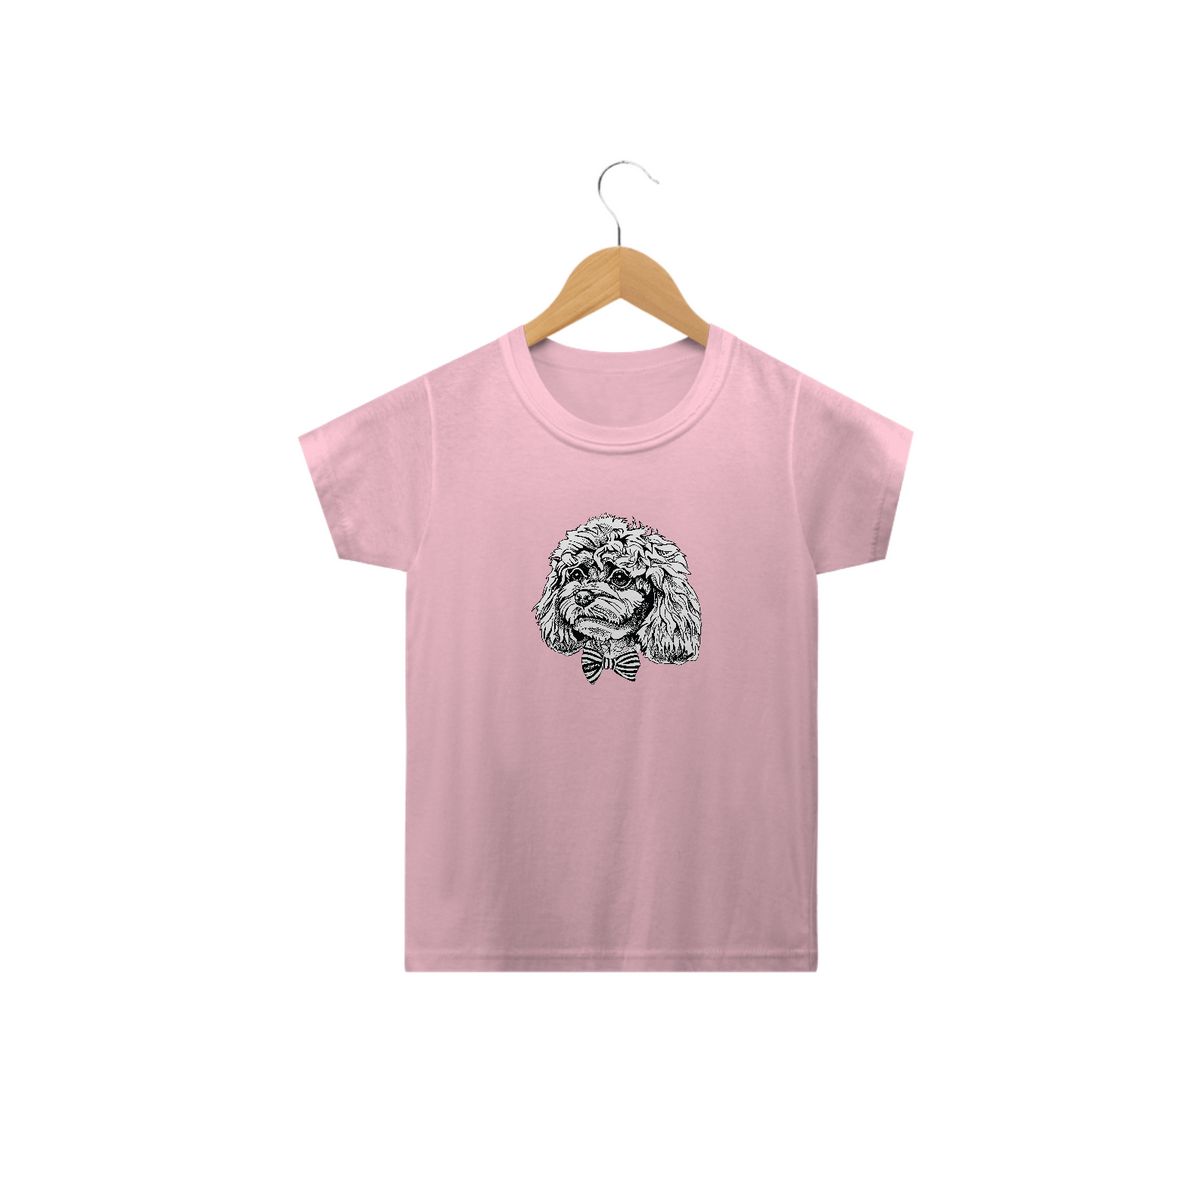 Nome do produto: Camiseta Infantil Poodle de Gravatinha Borboleta